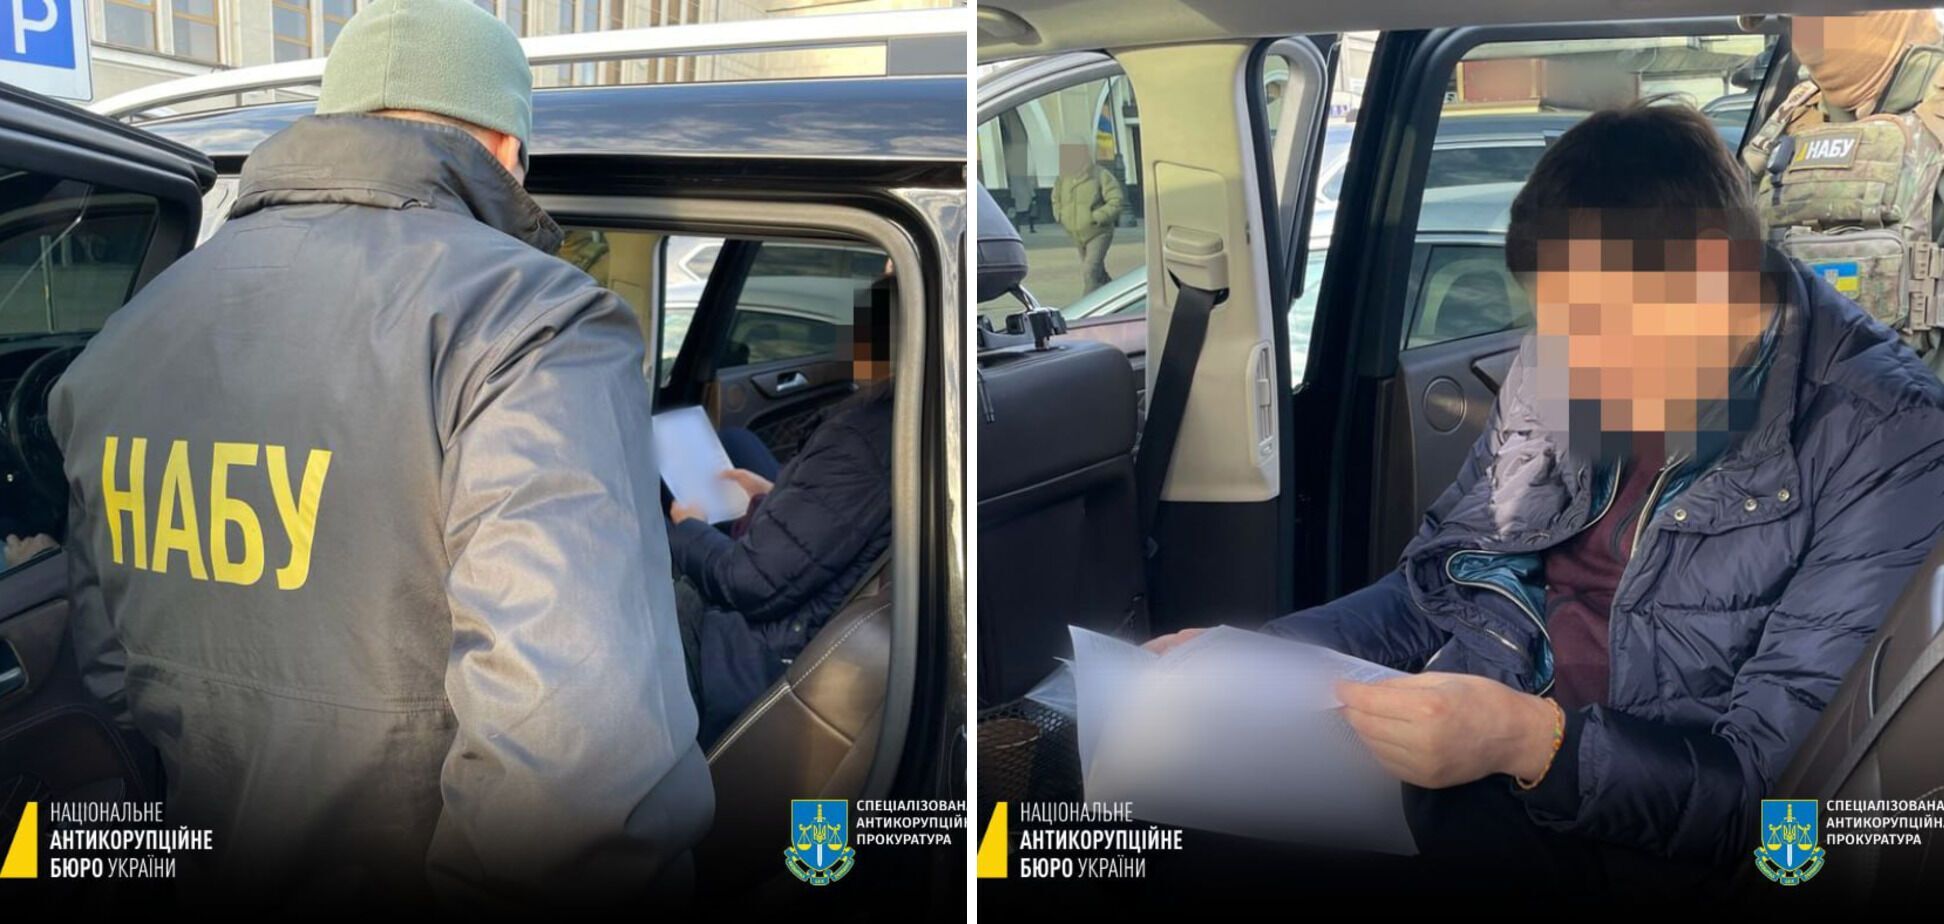 Нардепу Одарченко вручили подозрение